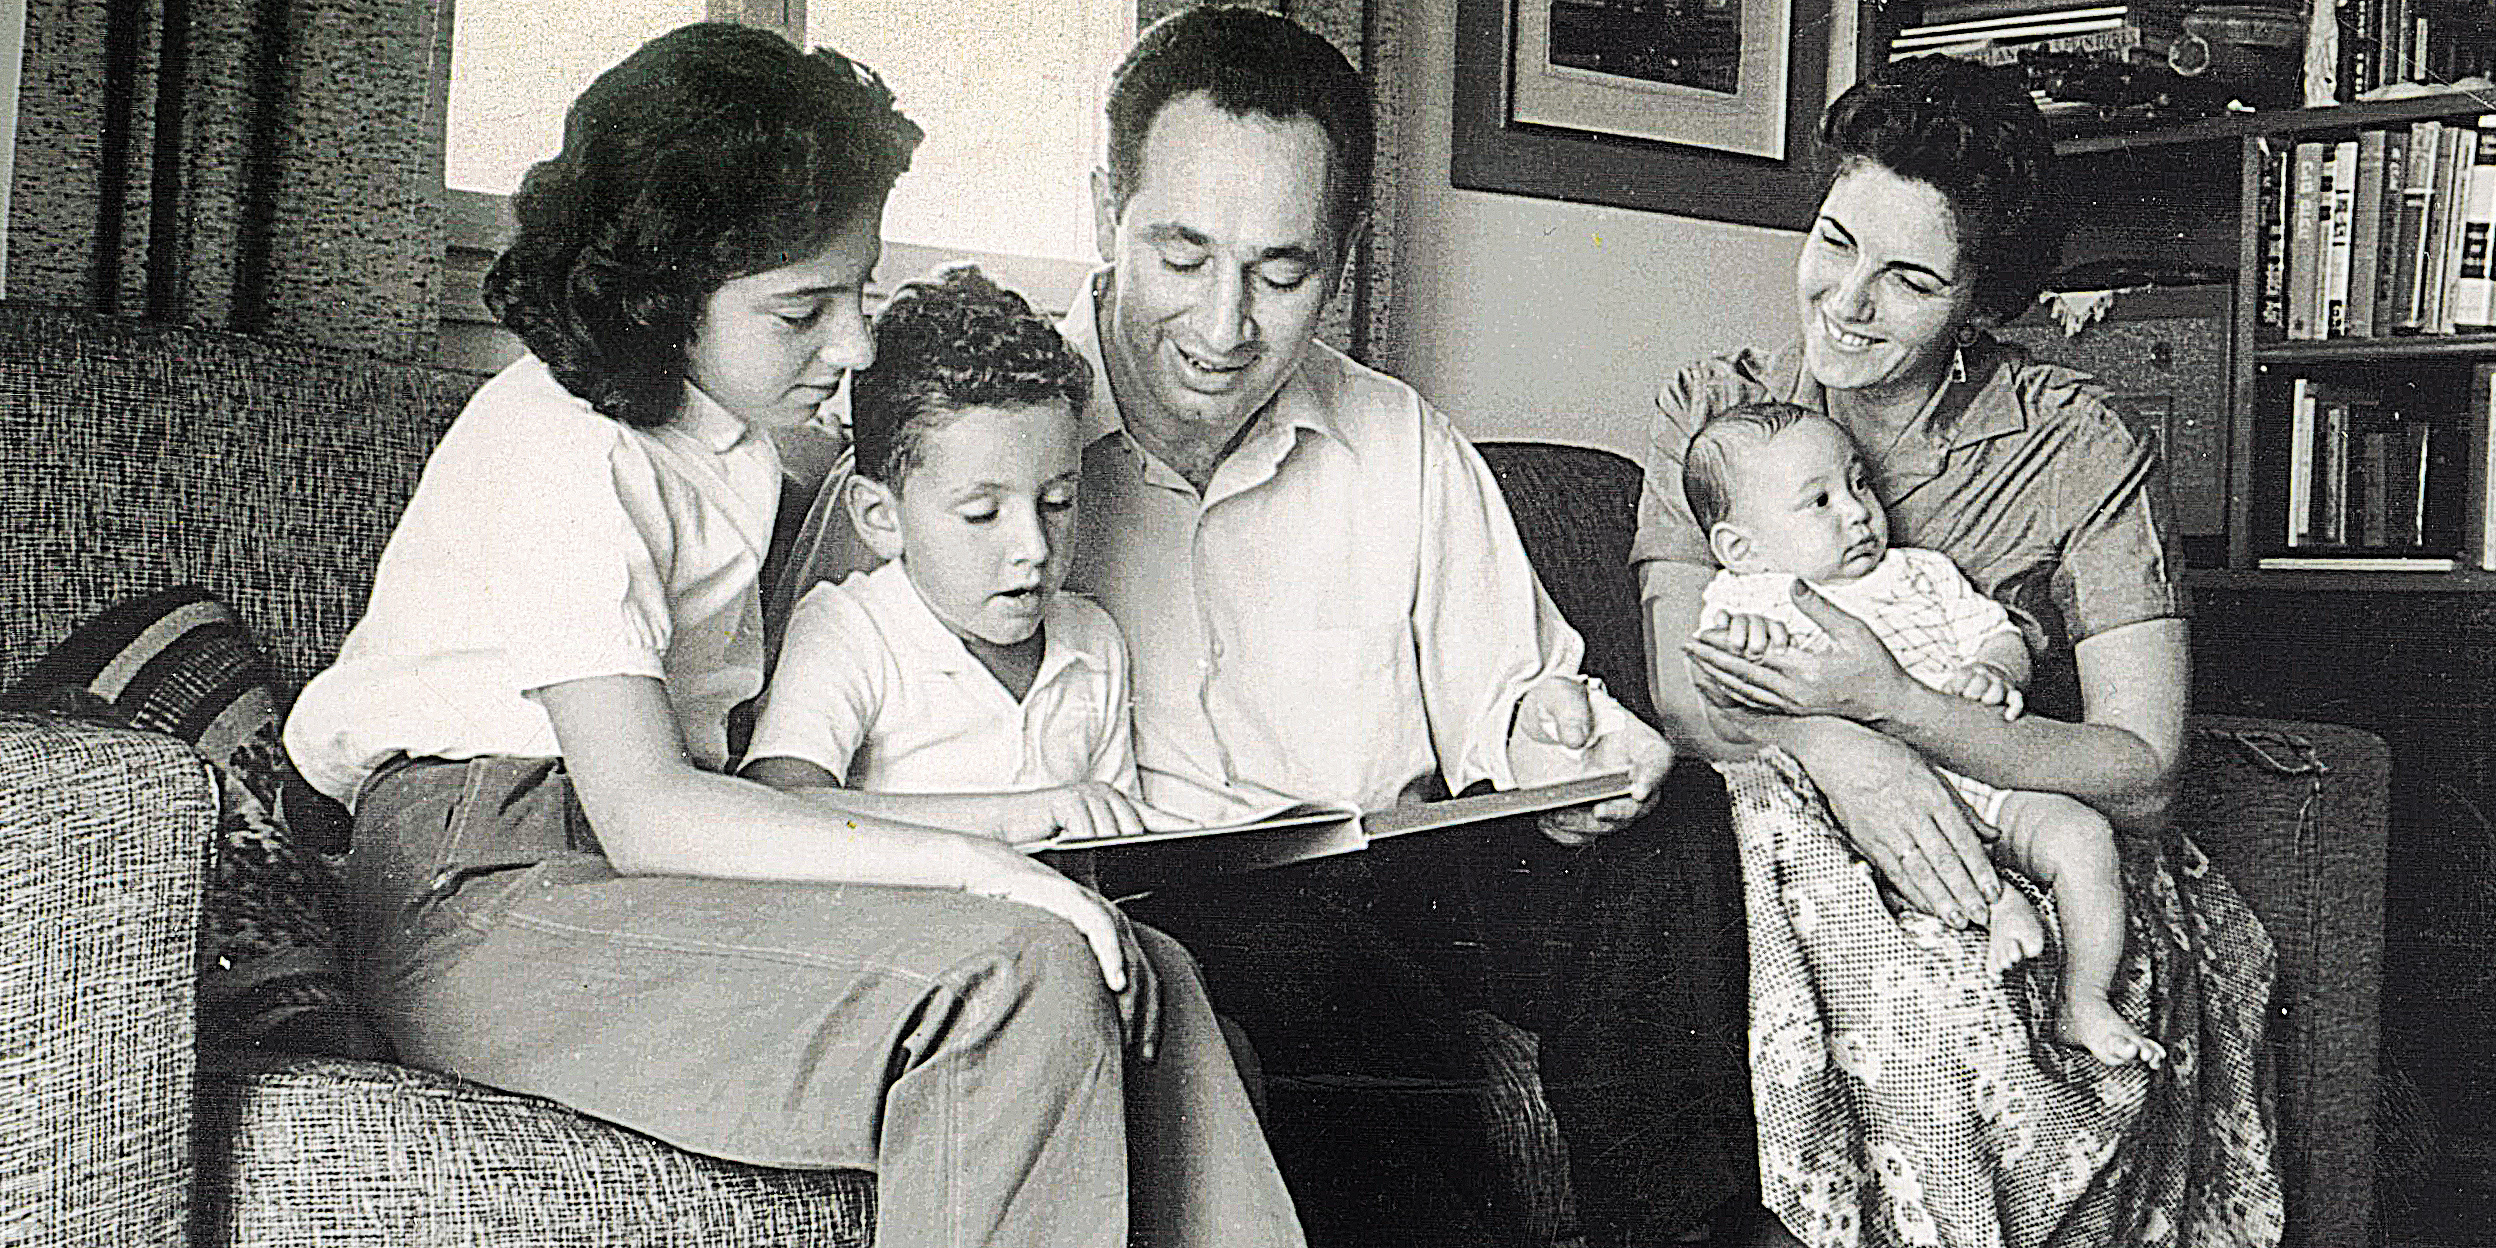 מימין: סוניה, חמי, שמעון, יהונתן וצביה פרס בסלון דירתם, 1958. "תמיד חשבתי שבורכתי באמא הכי טובה בעולם, ובאבא יוצא דופן. הלוואי שהייתי בוחר חברות להשקעה כמו שבחרתי את הוריי" 